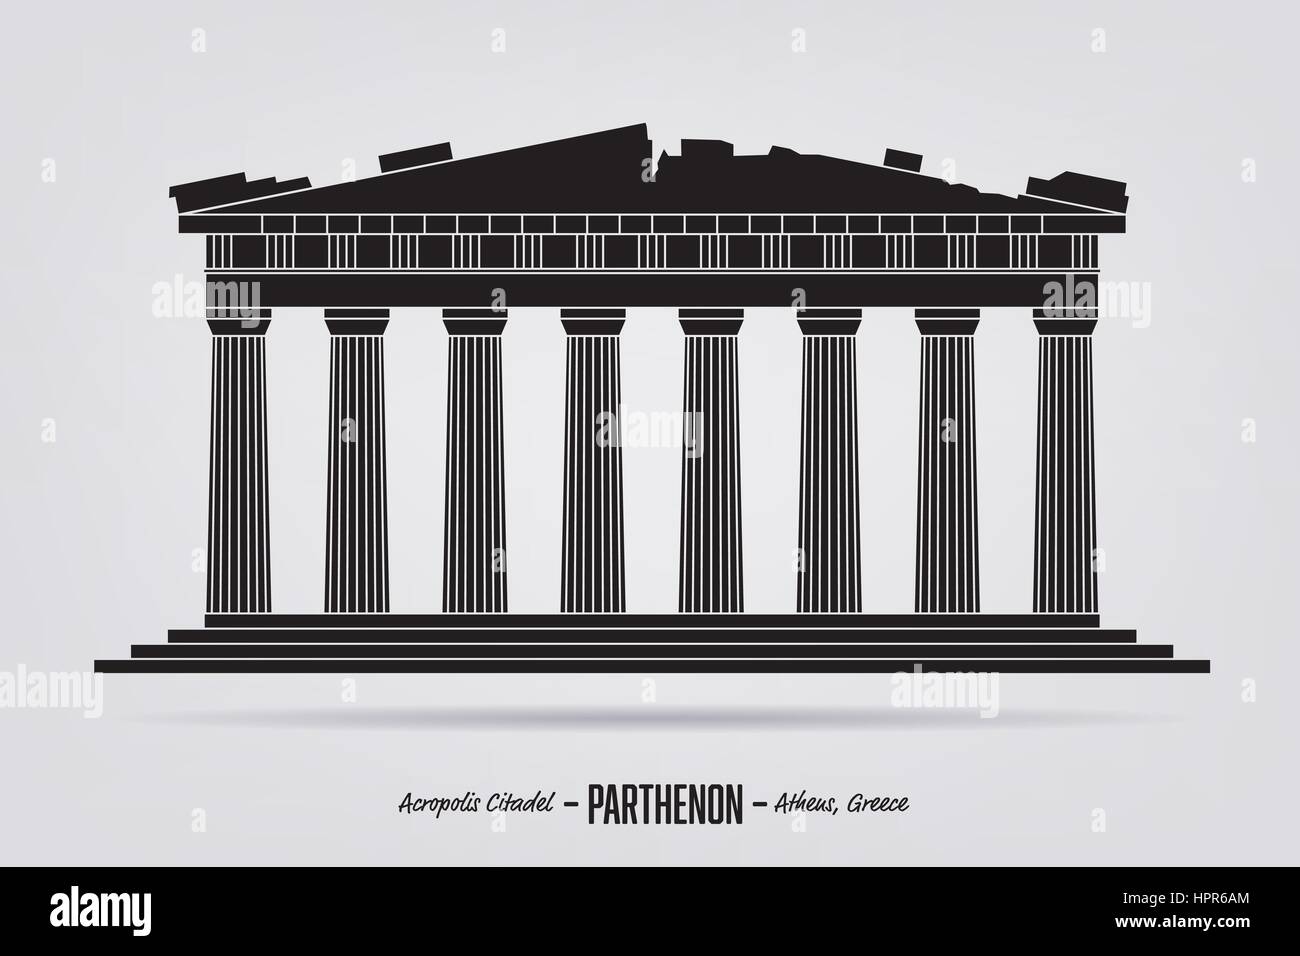 Silhouette vecteur du Parthénon ruine à l'Acropilis Citadelle, Athènes, Grèce Illustration de Vecteur